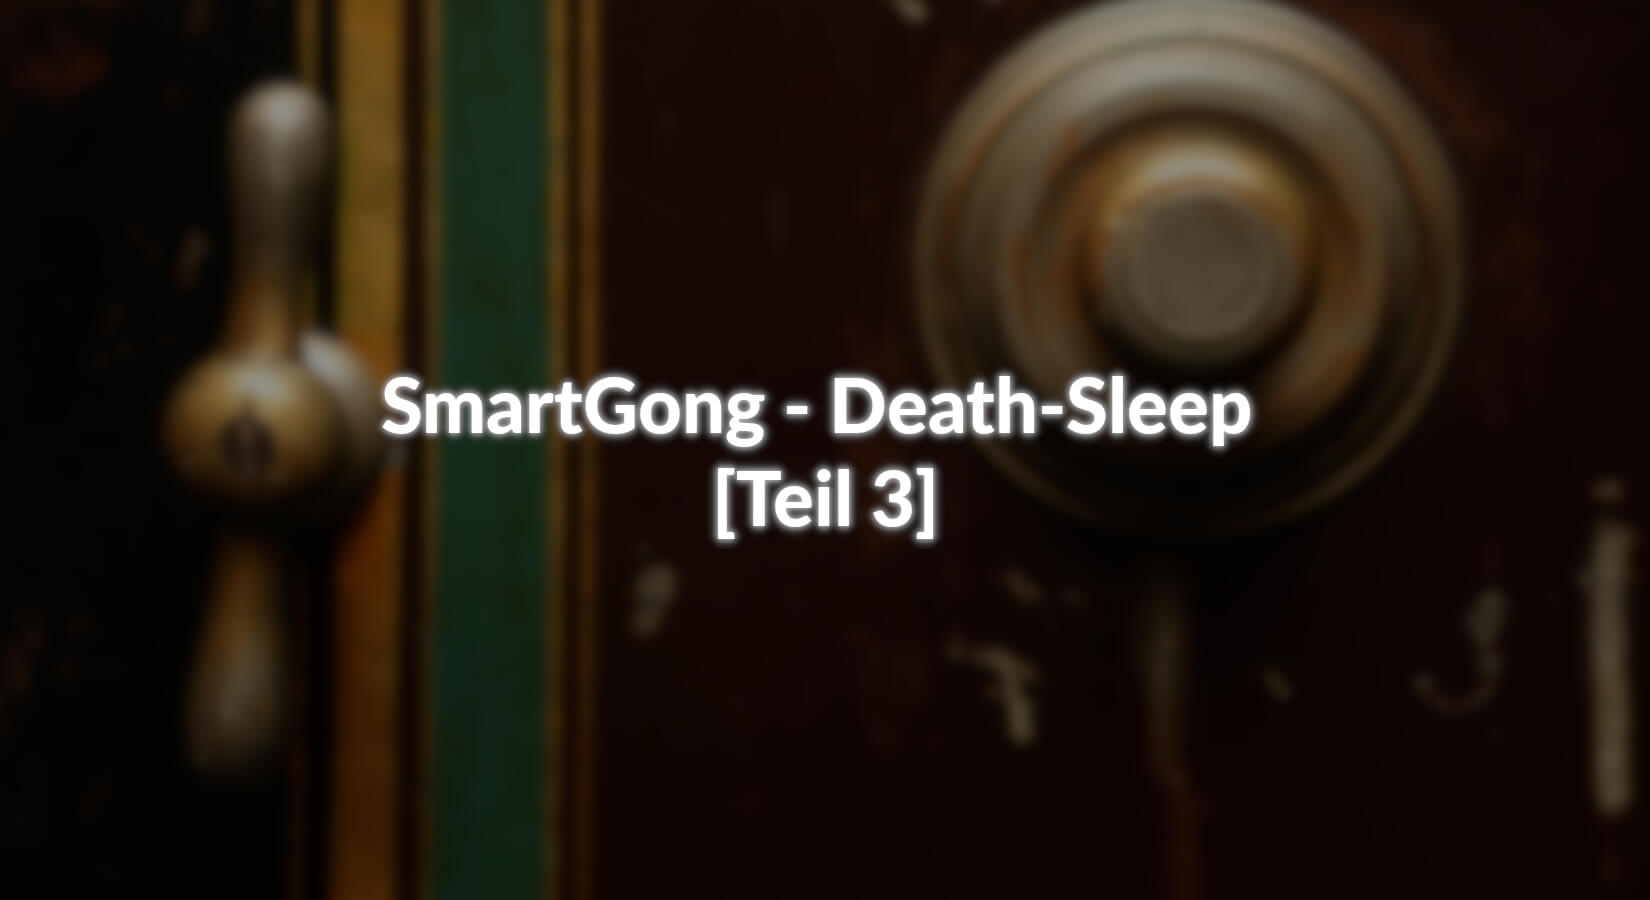 SmartGong - [Teil 3] - Death-Sleep - AZ-Delivery